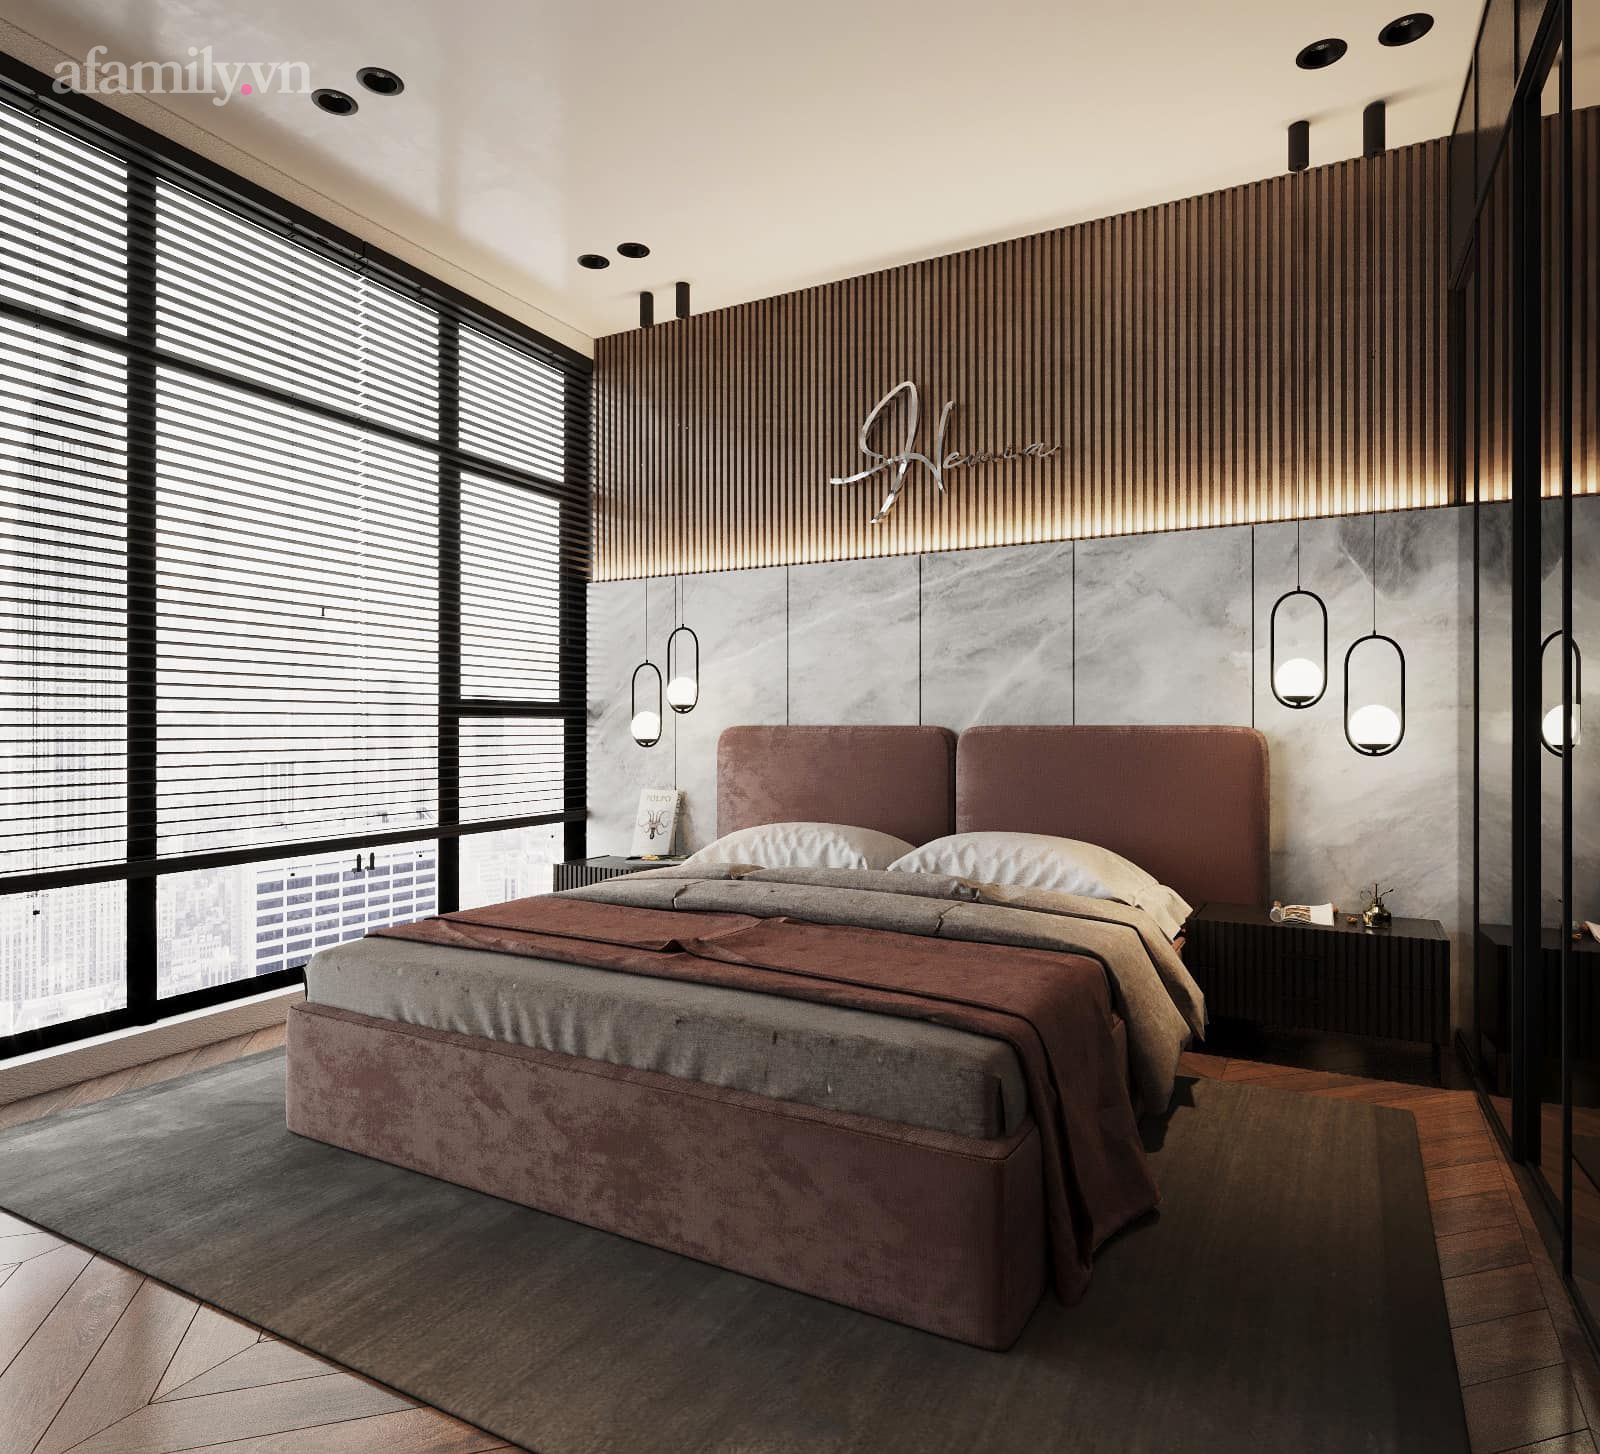 Căn penthouse duplex của nữ CEO Hà Nội bao trọn view sông Hồng, thiết kế luxury hiện đại tone chủ đạo nâu đen cực huyền bí - Ảnh 9.